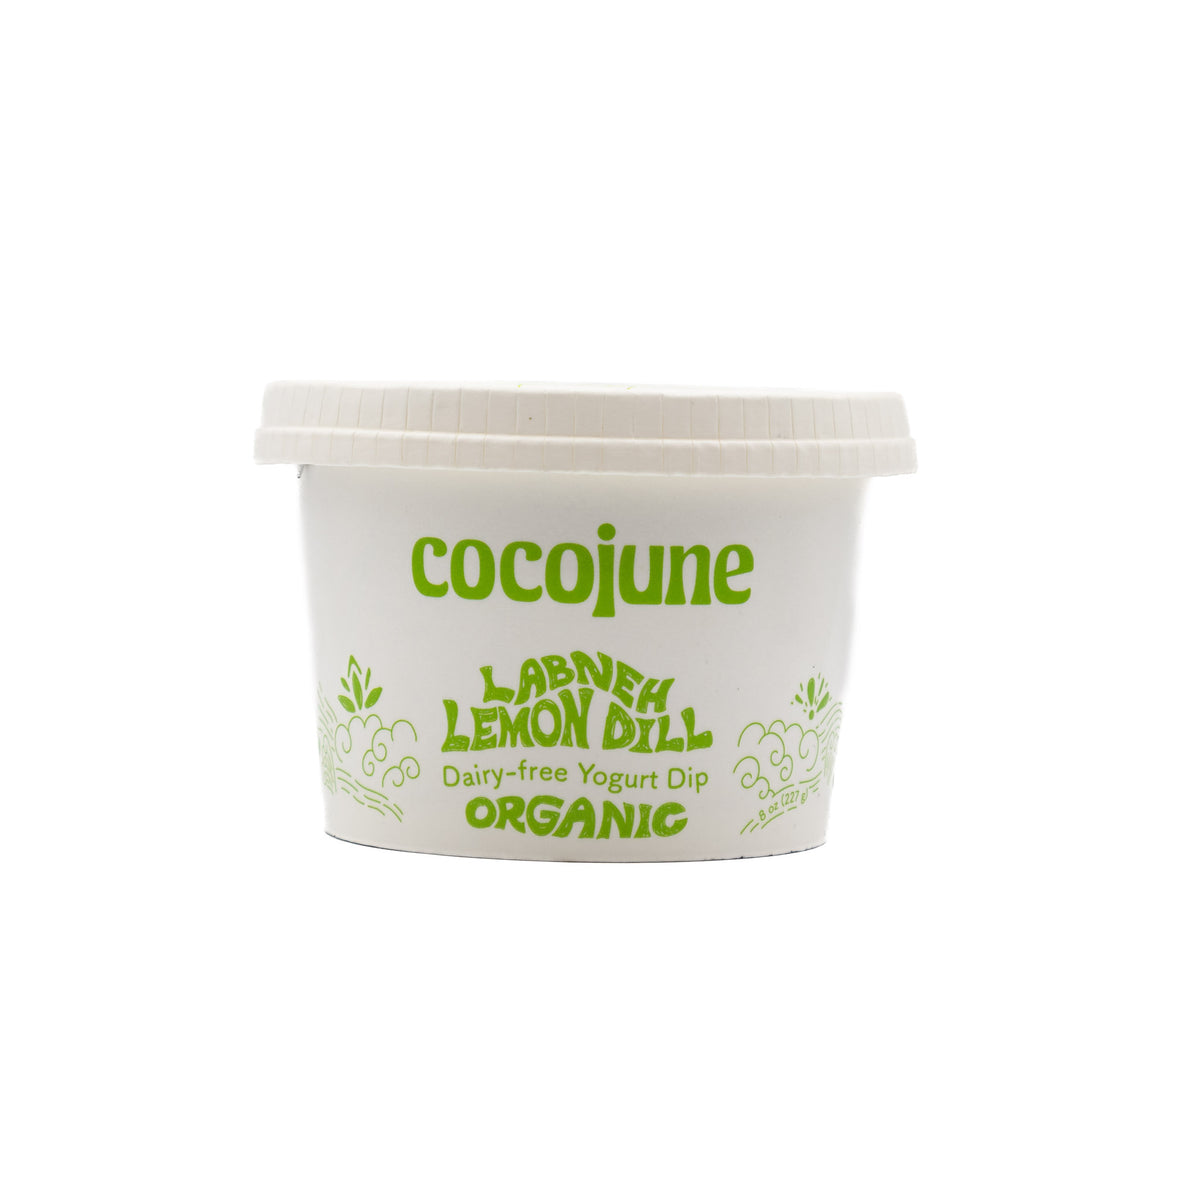 Cocojune Yogurt Dip Lemon Dill